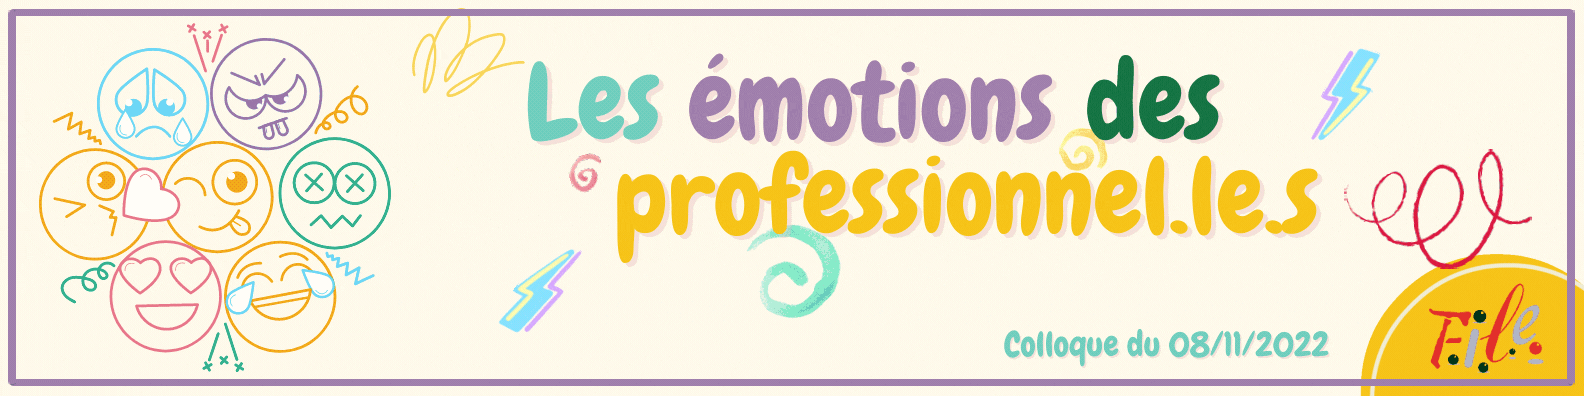 Les émotions des professionnel.le.s